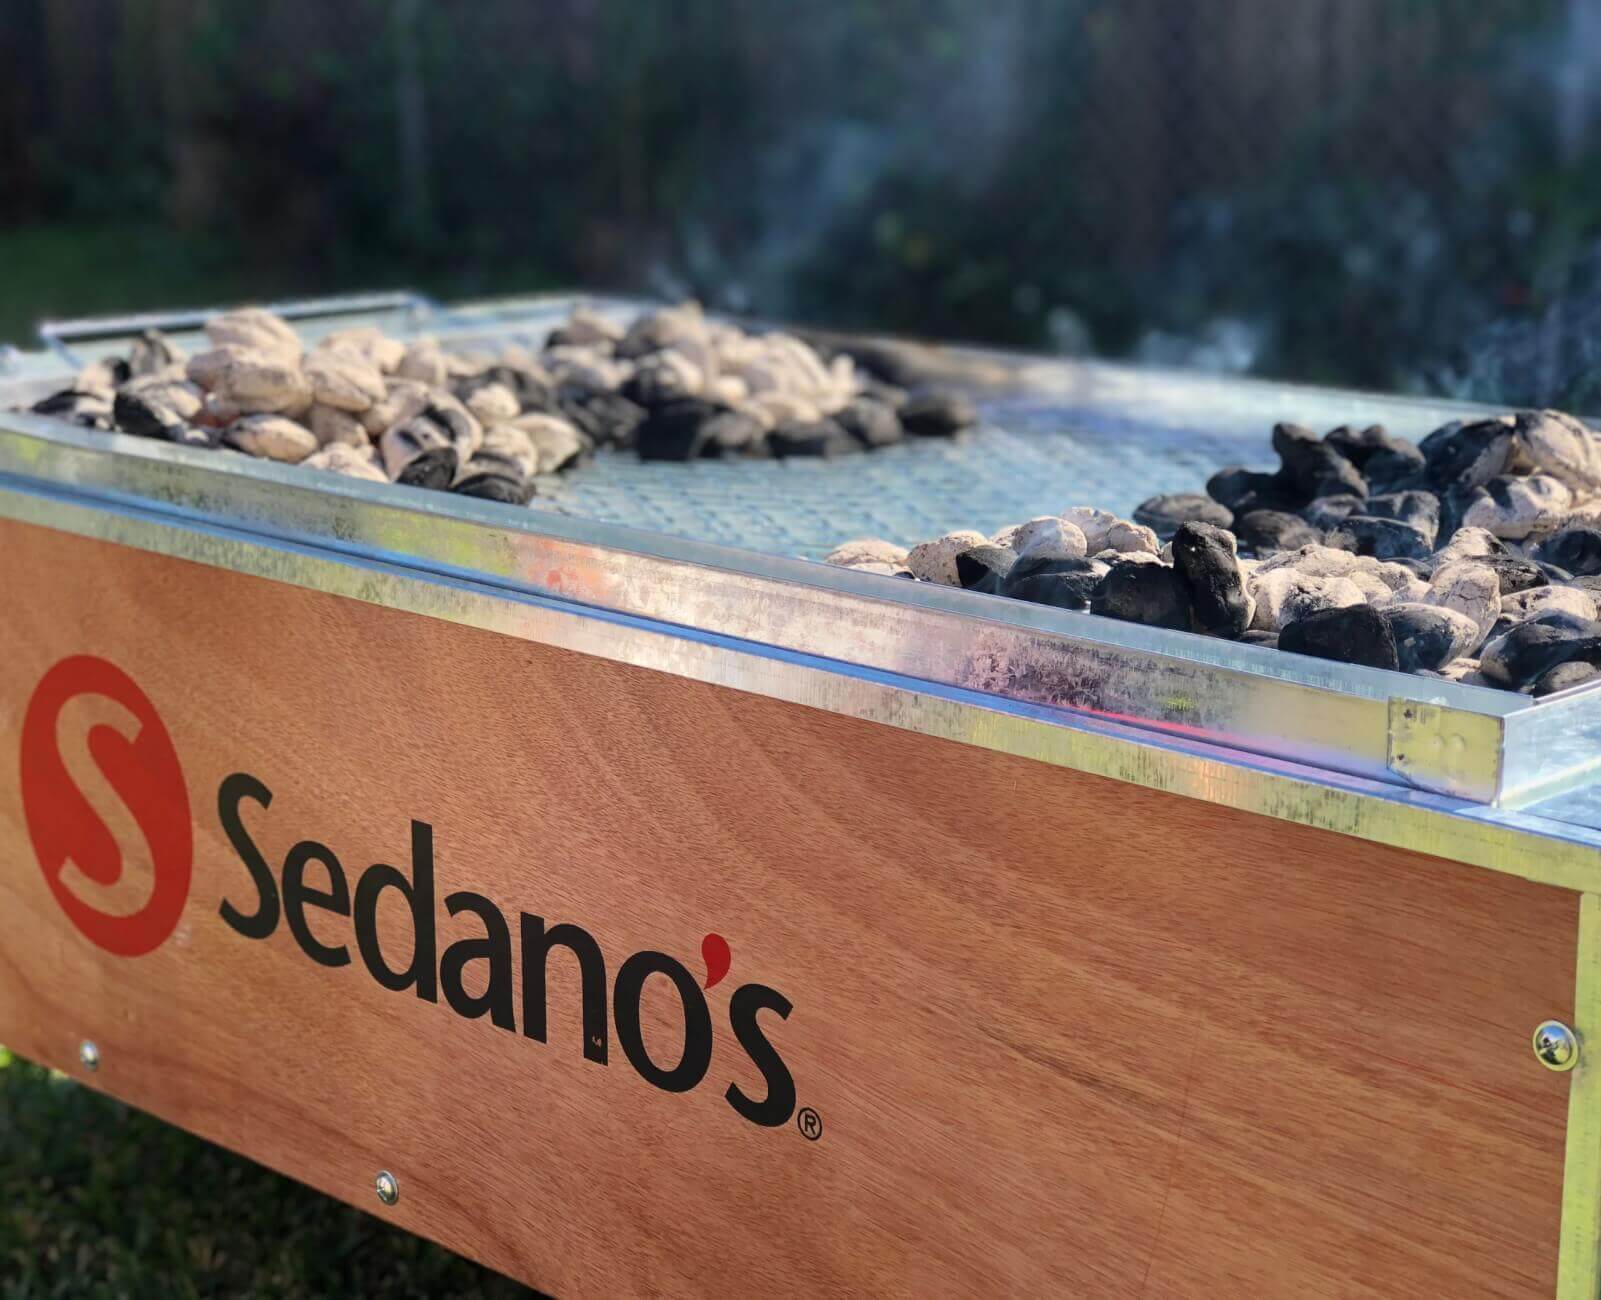 Sedanos.com Sedano's Roasting Box Coals Close